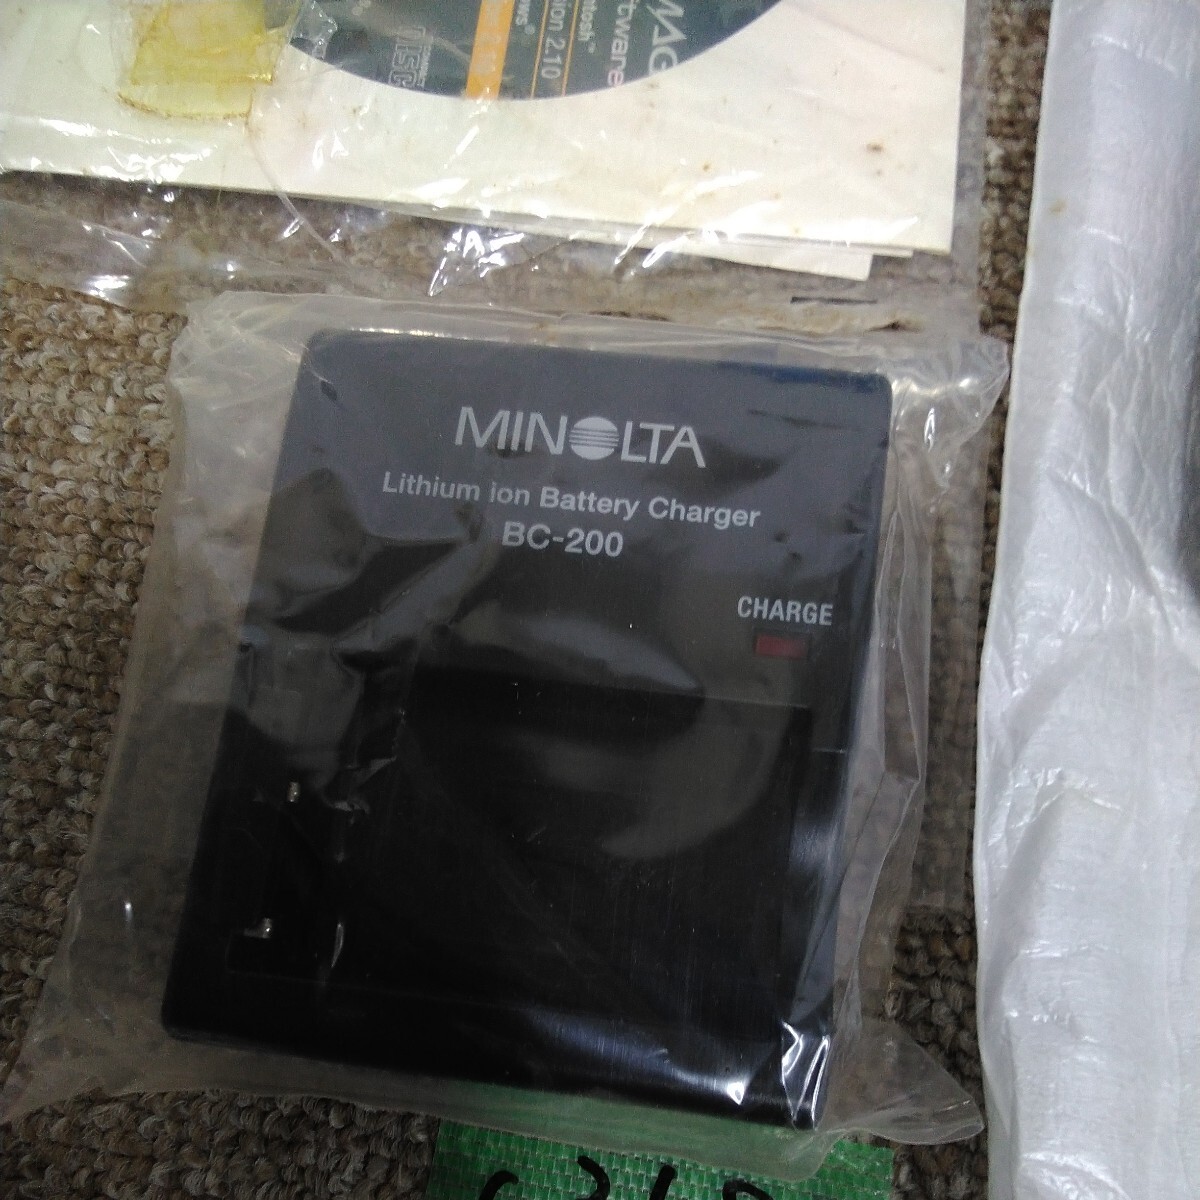 c3683 стоимость доставки 520 иен корпус выставленный товар хранение Minolta Minolta DiMAGE Xi 5.7-17.1mm F2.8-3.6 компактный цифровой фотоаппарат аккумулятор. зарядка не возможно 